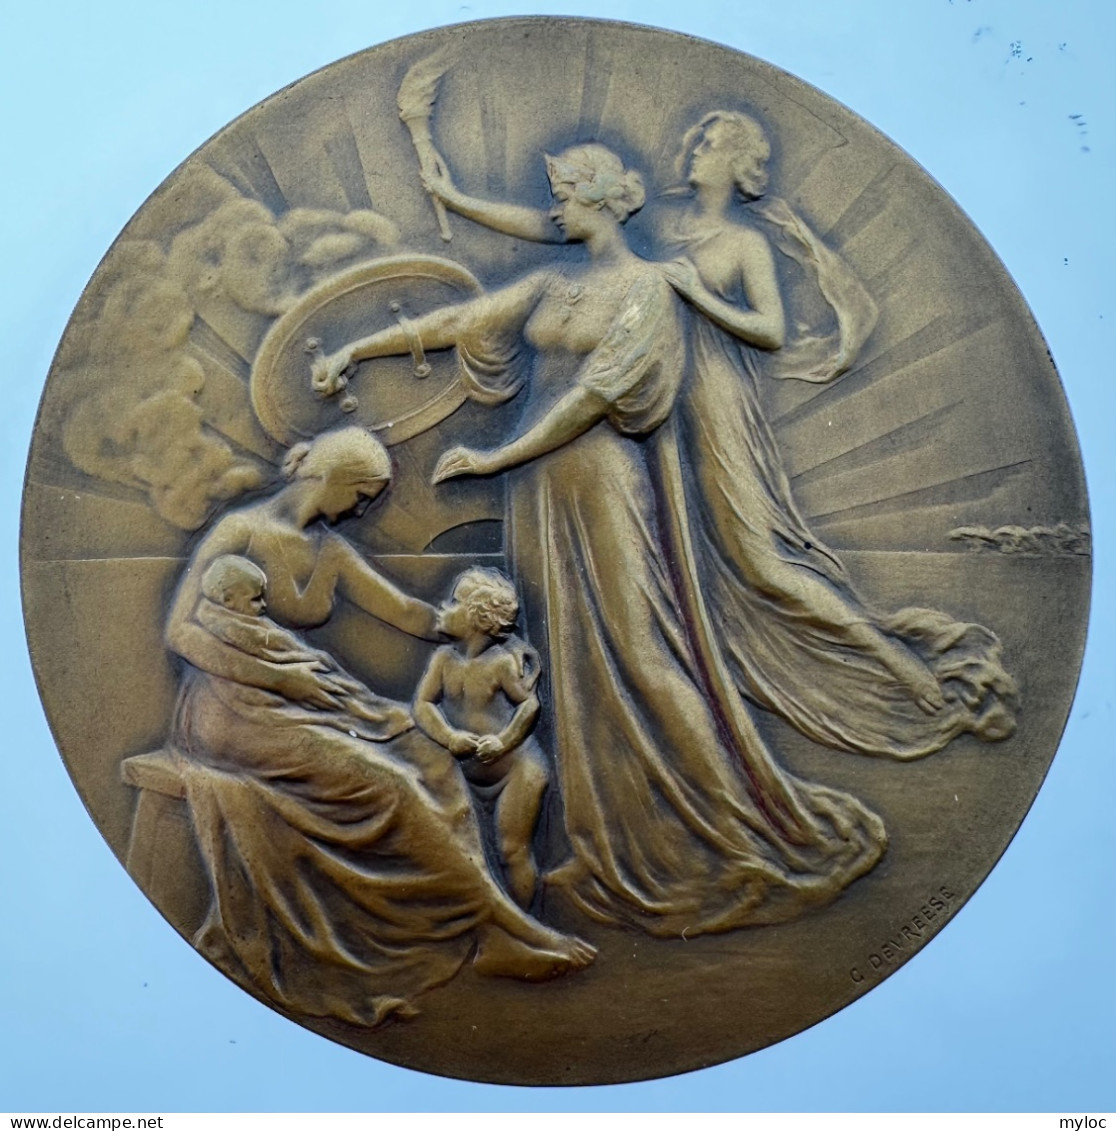 Médaille Bronze. Médaille Frappée à L'occasion Du Centenaire De La Compagnie Des Assurances Générales. A. Devreese - Professionals / Firms